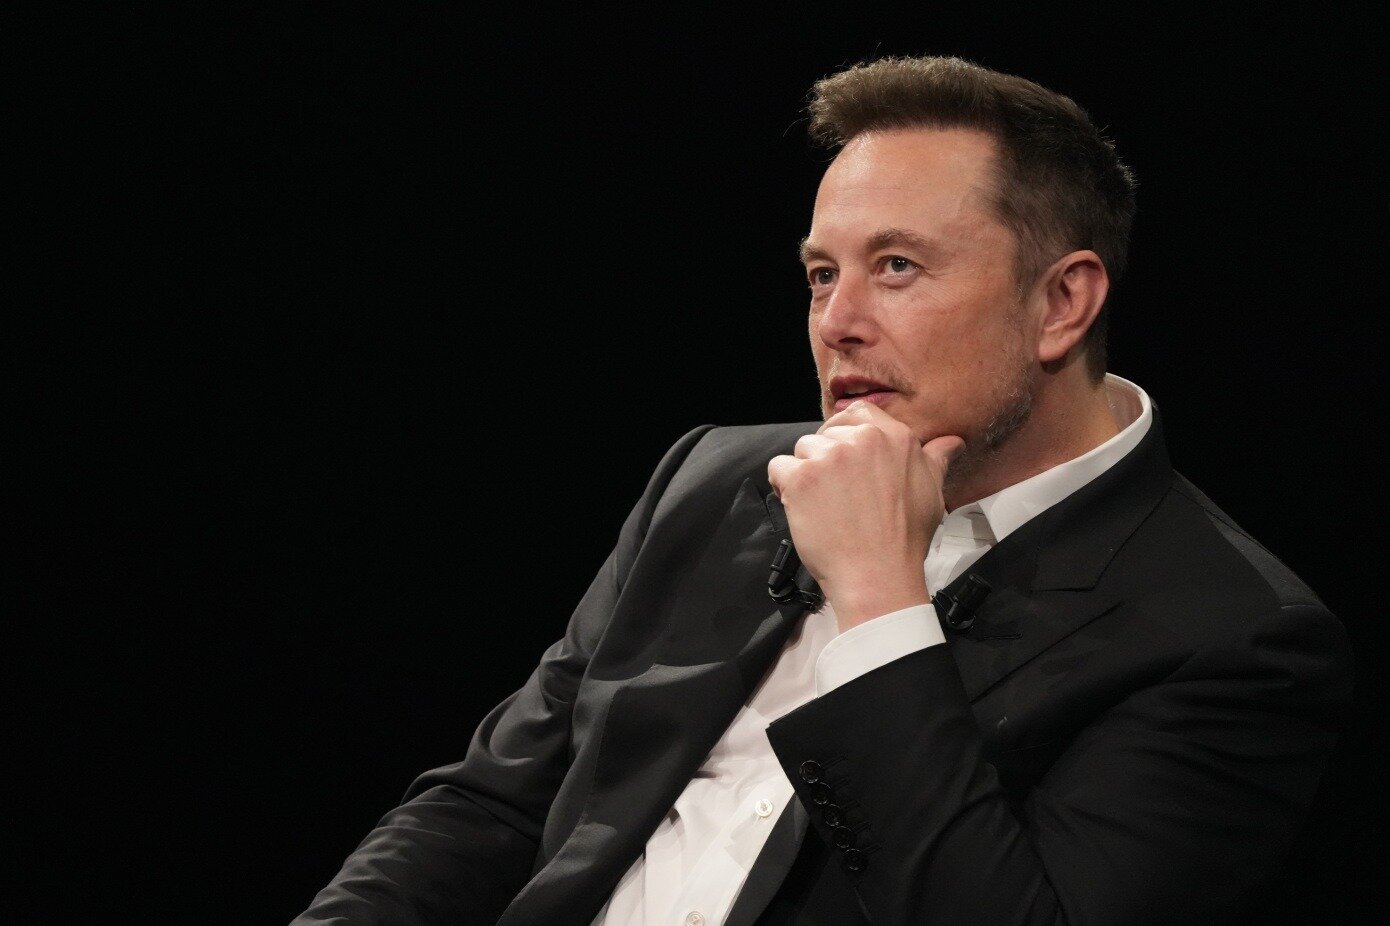 Η νέα εταιρεία τεχνητής νοημοσύνης του Elon Musk θέλει να "κατανοήσει το σύμπαν και την πραγματικότητα"